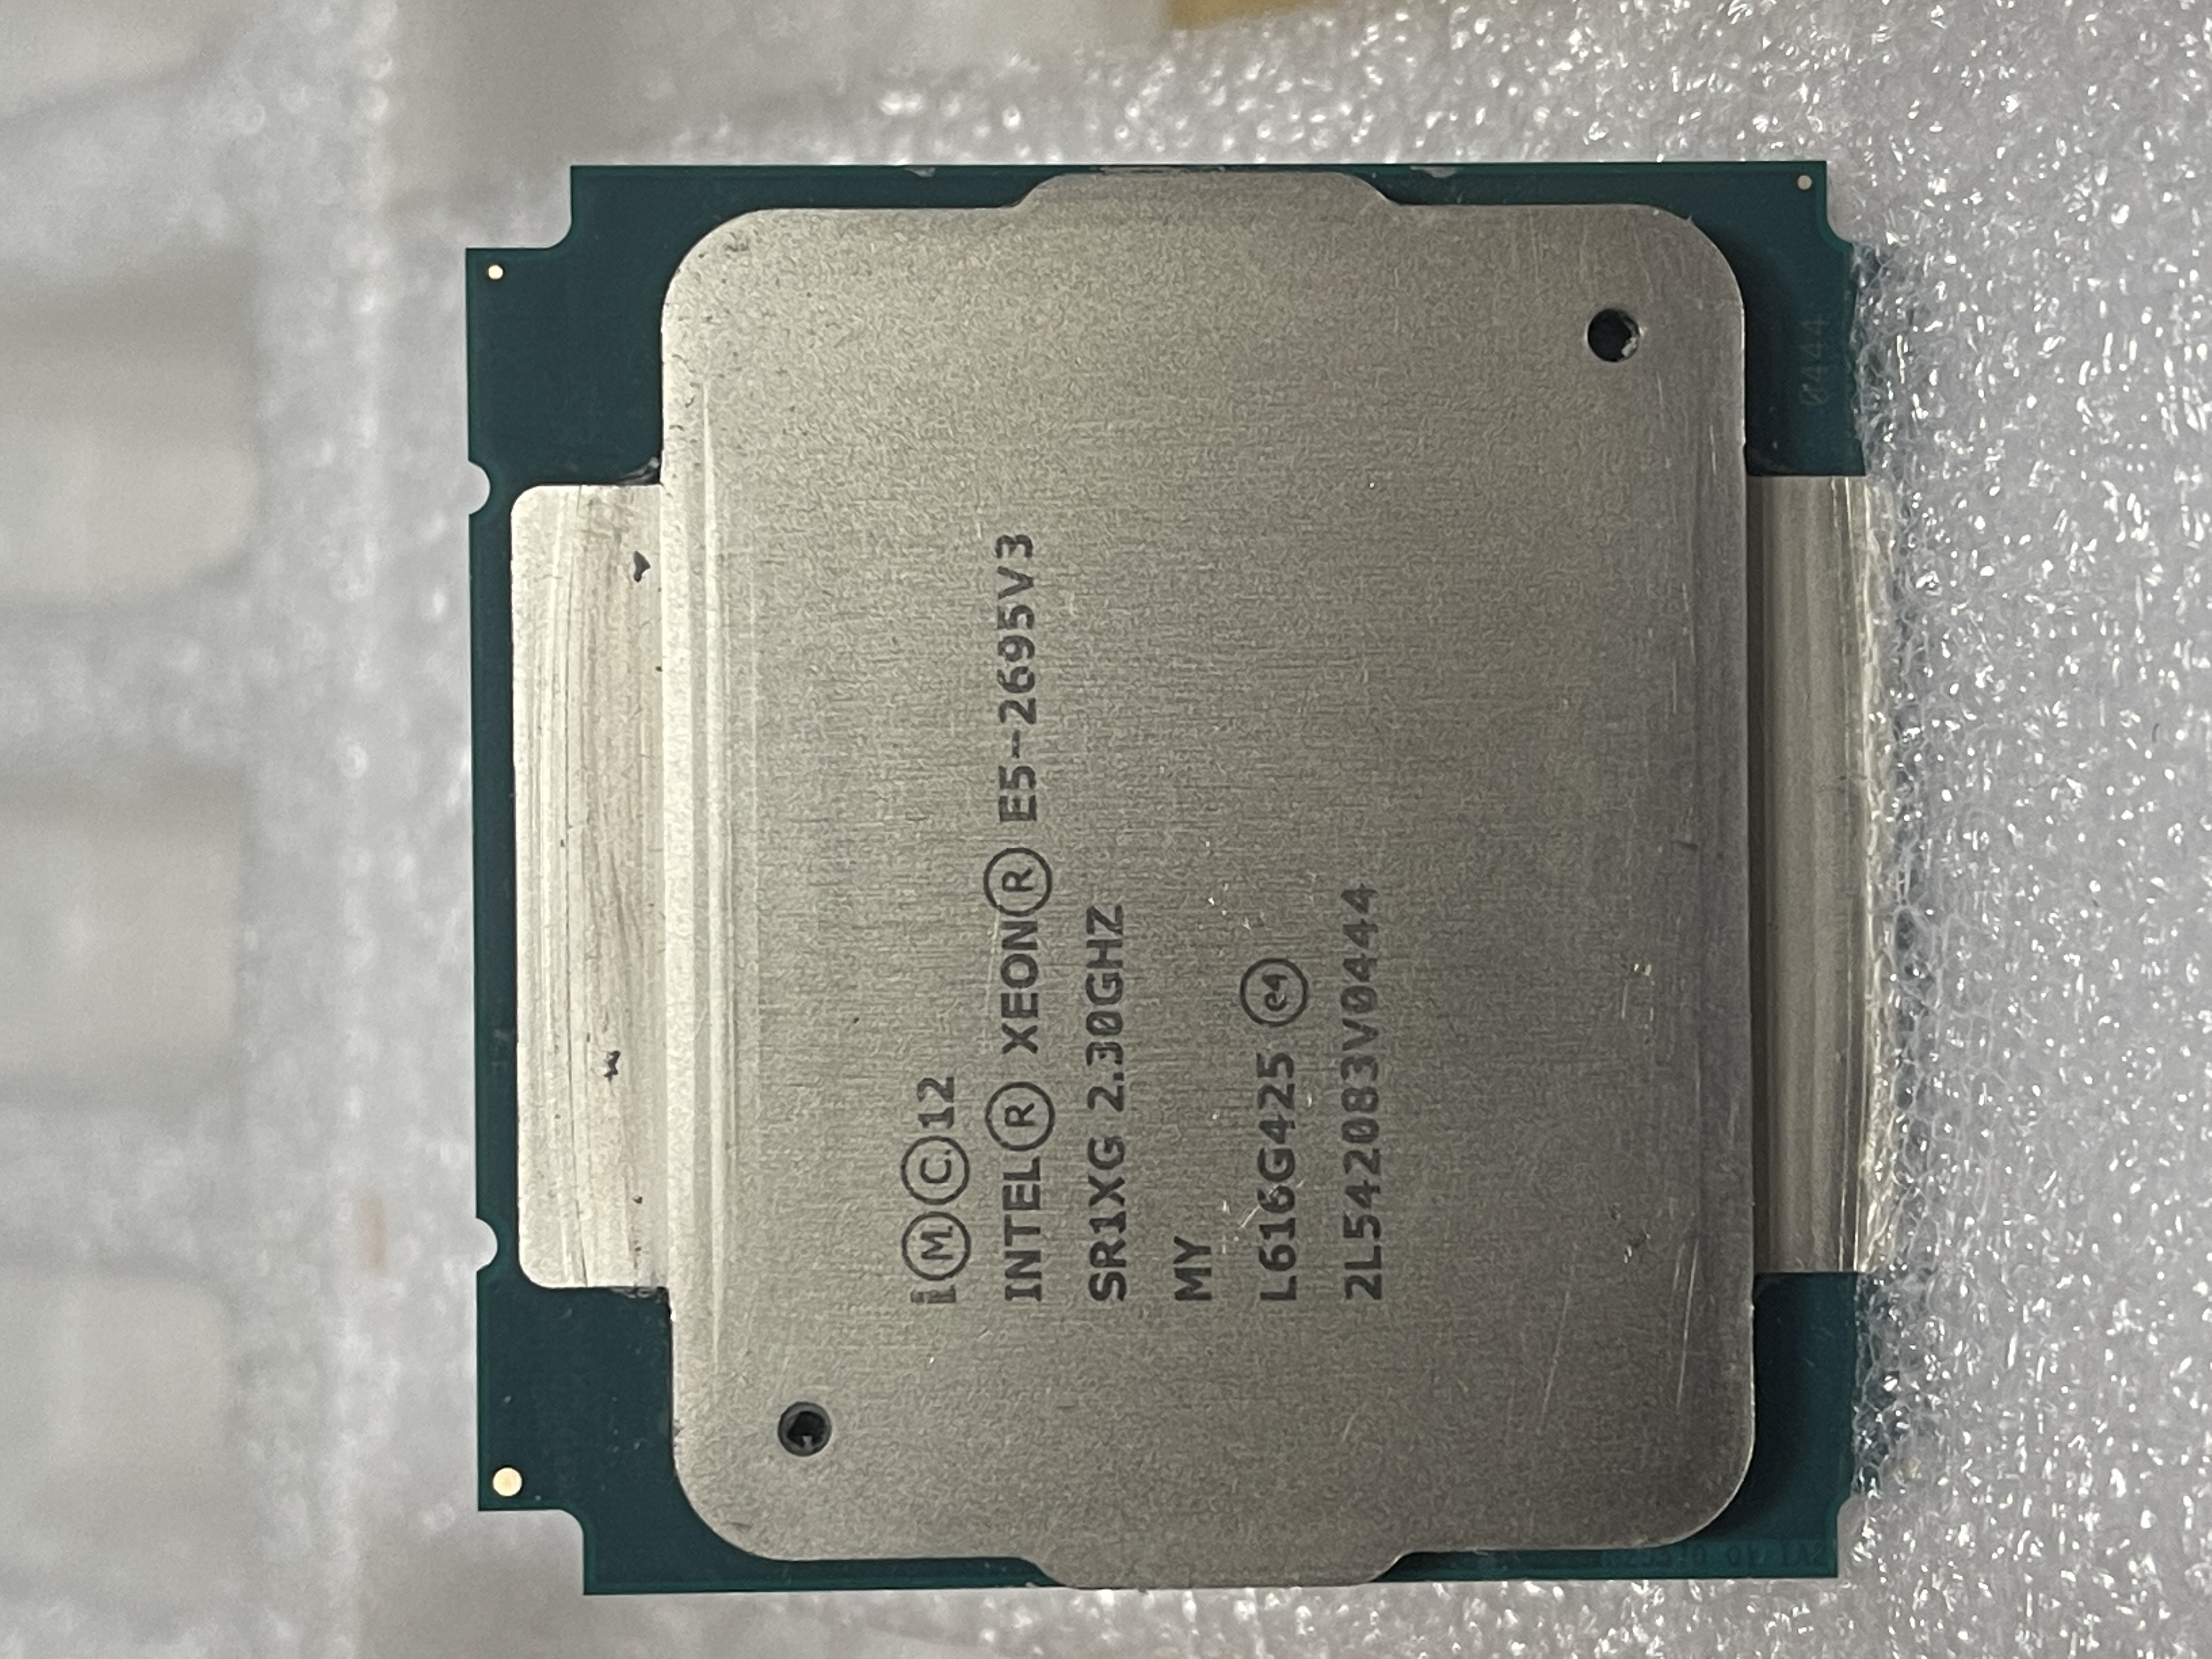 سی پی یو سرور Intel Xeon Processor E5-2695 V3